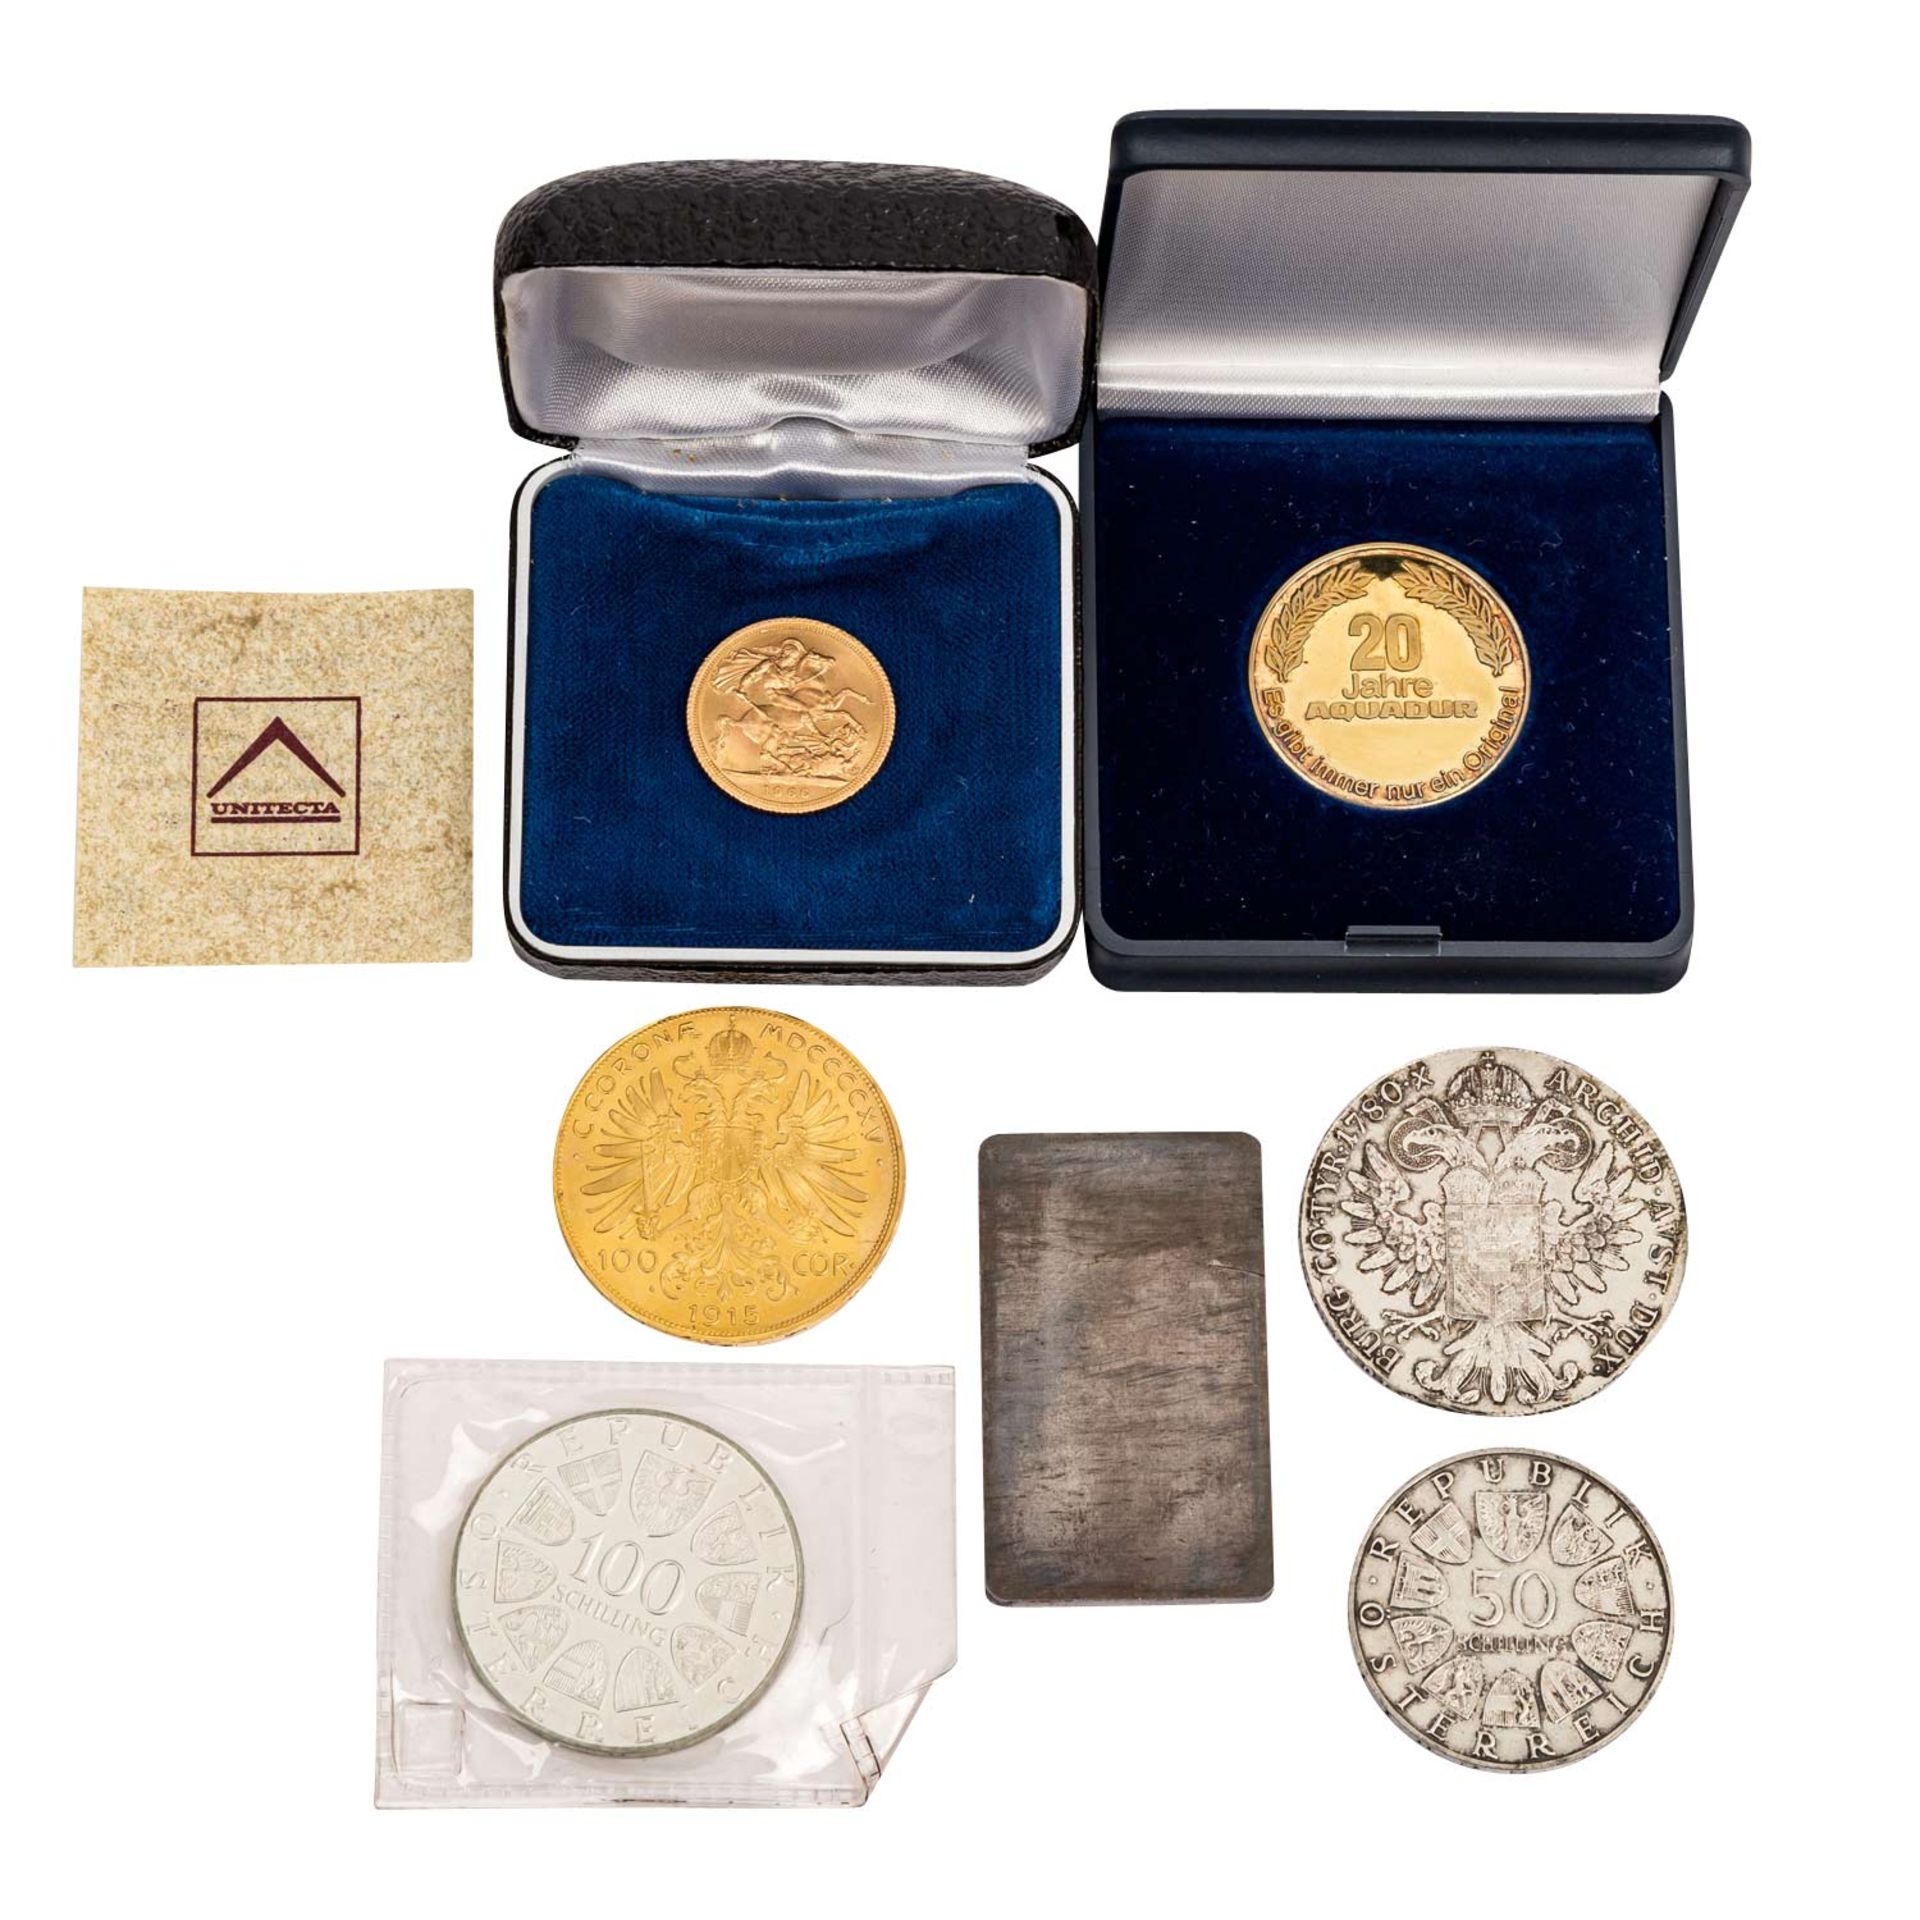 GOLD - SILBERLOT mit Österreich 100 Kronen 1915 NP,GB 1 Sovereign 1966 Elisabeth II., Goldgehalt ca. - Bild 2 aus 2